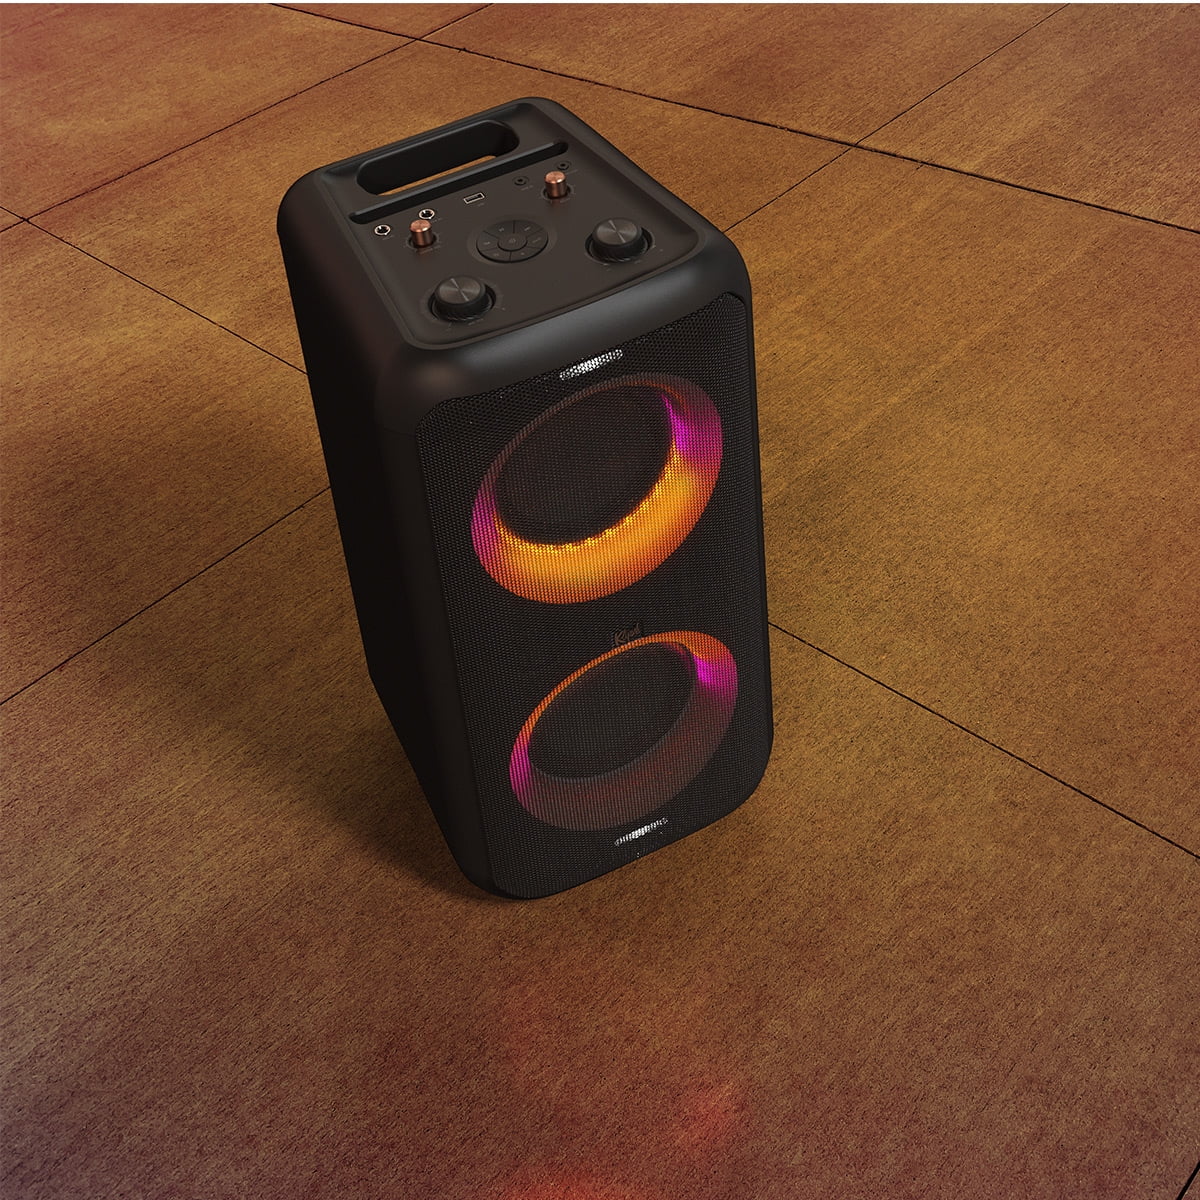 Klipsch GIG XXL Portable Wireless Party Speaker with Mic